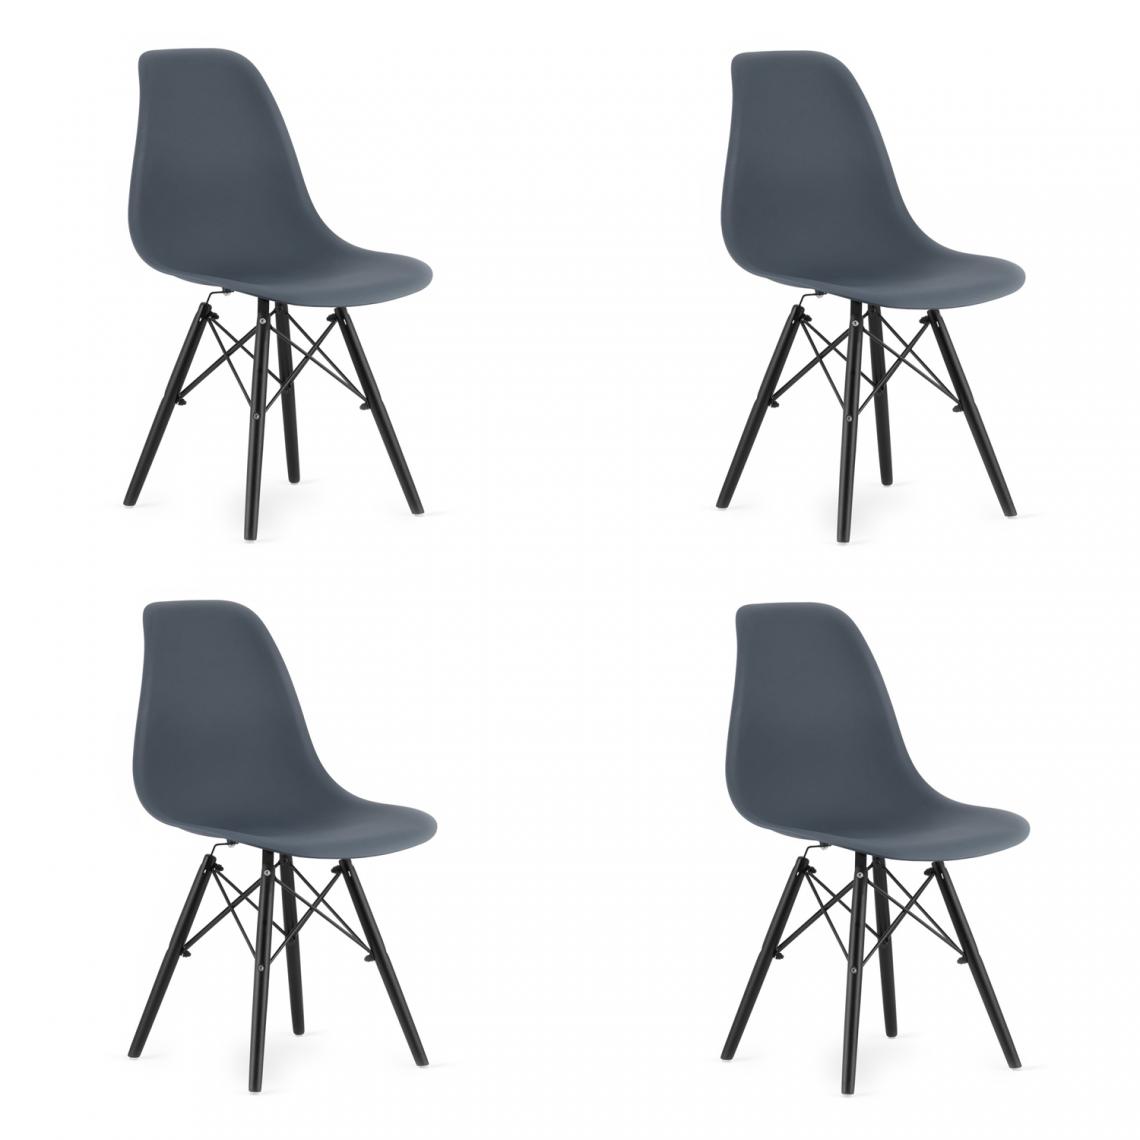 Hucoco - OSATA - Lot de 4 chaises en PP style moderne salon/cuisine - 81x54x46 cm - Chaise de salle à manger - Gris - Chaises